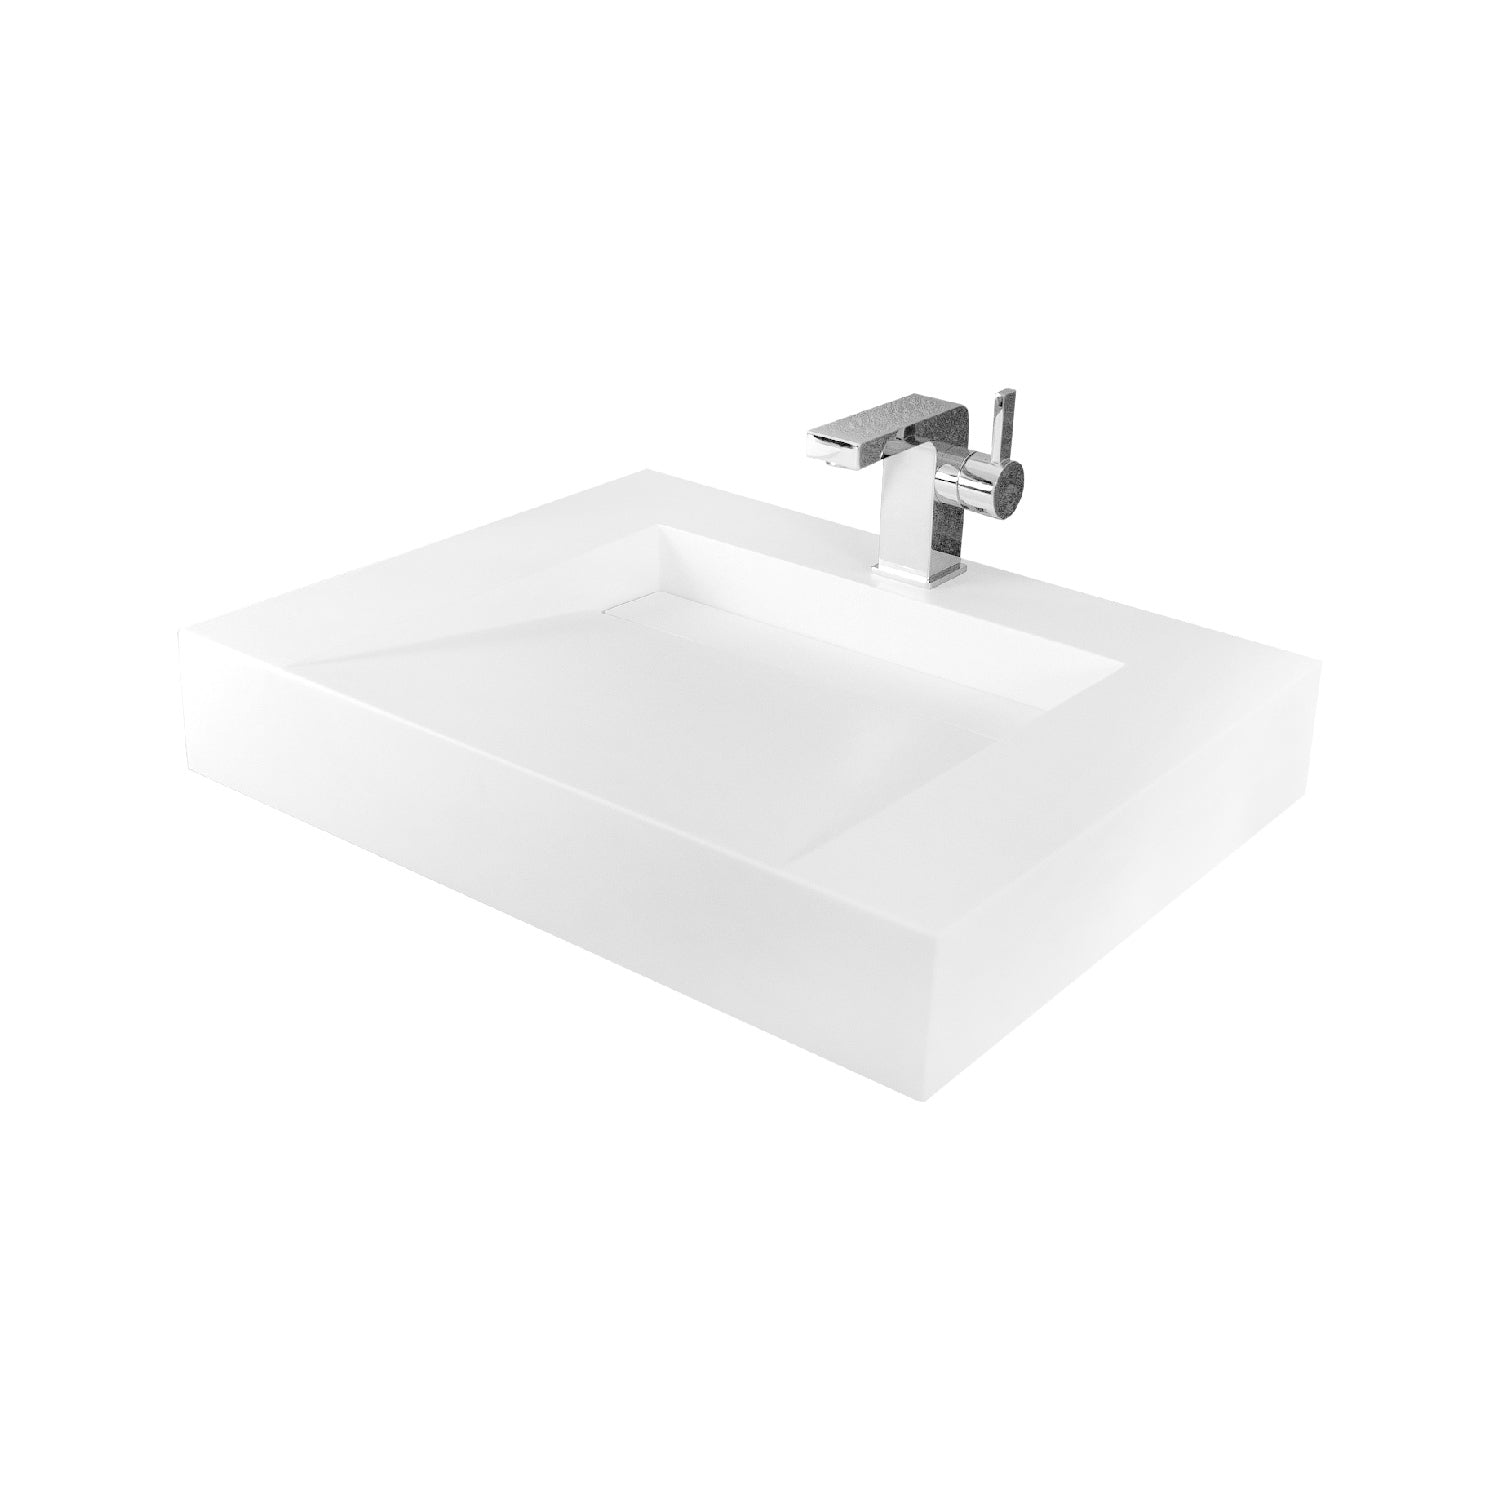 DAX Lavabo de baño rectangular de superficie sólida de un solo tazón, acabado blanco mate, 23-3/5 x 18-1/2 x 4 pulgadas (DAX-AB-1379)